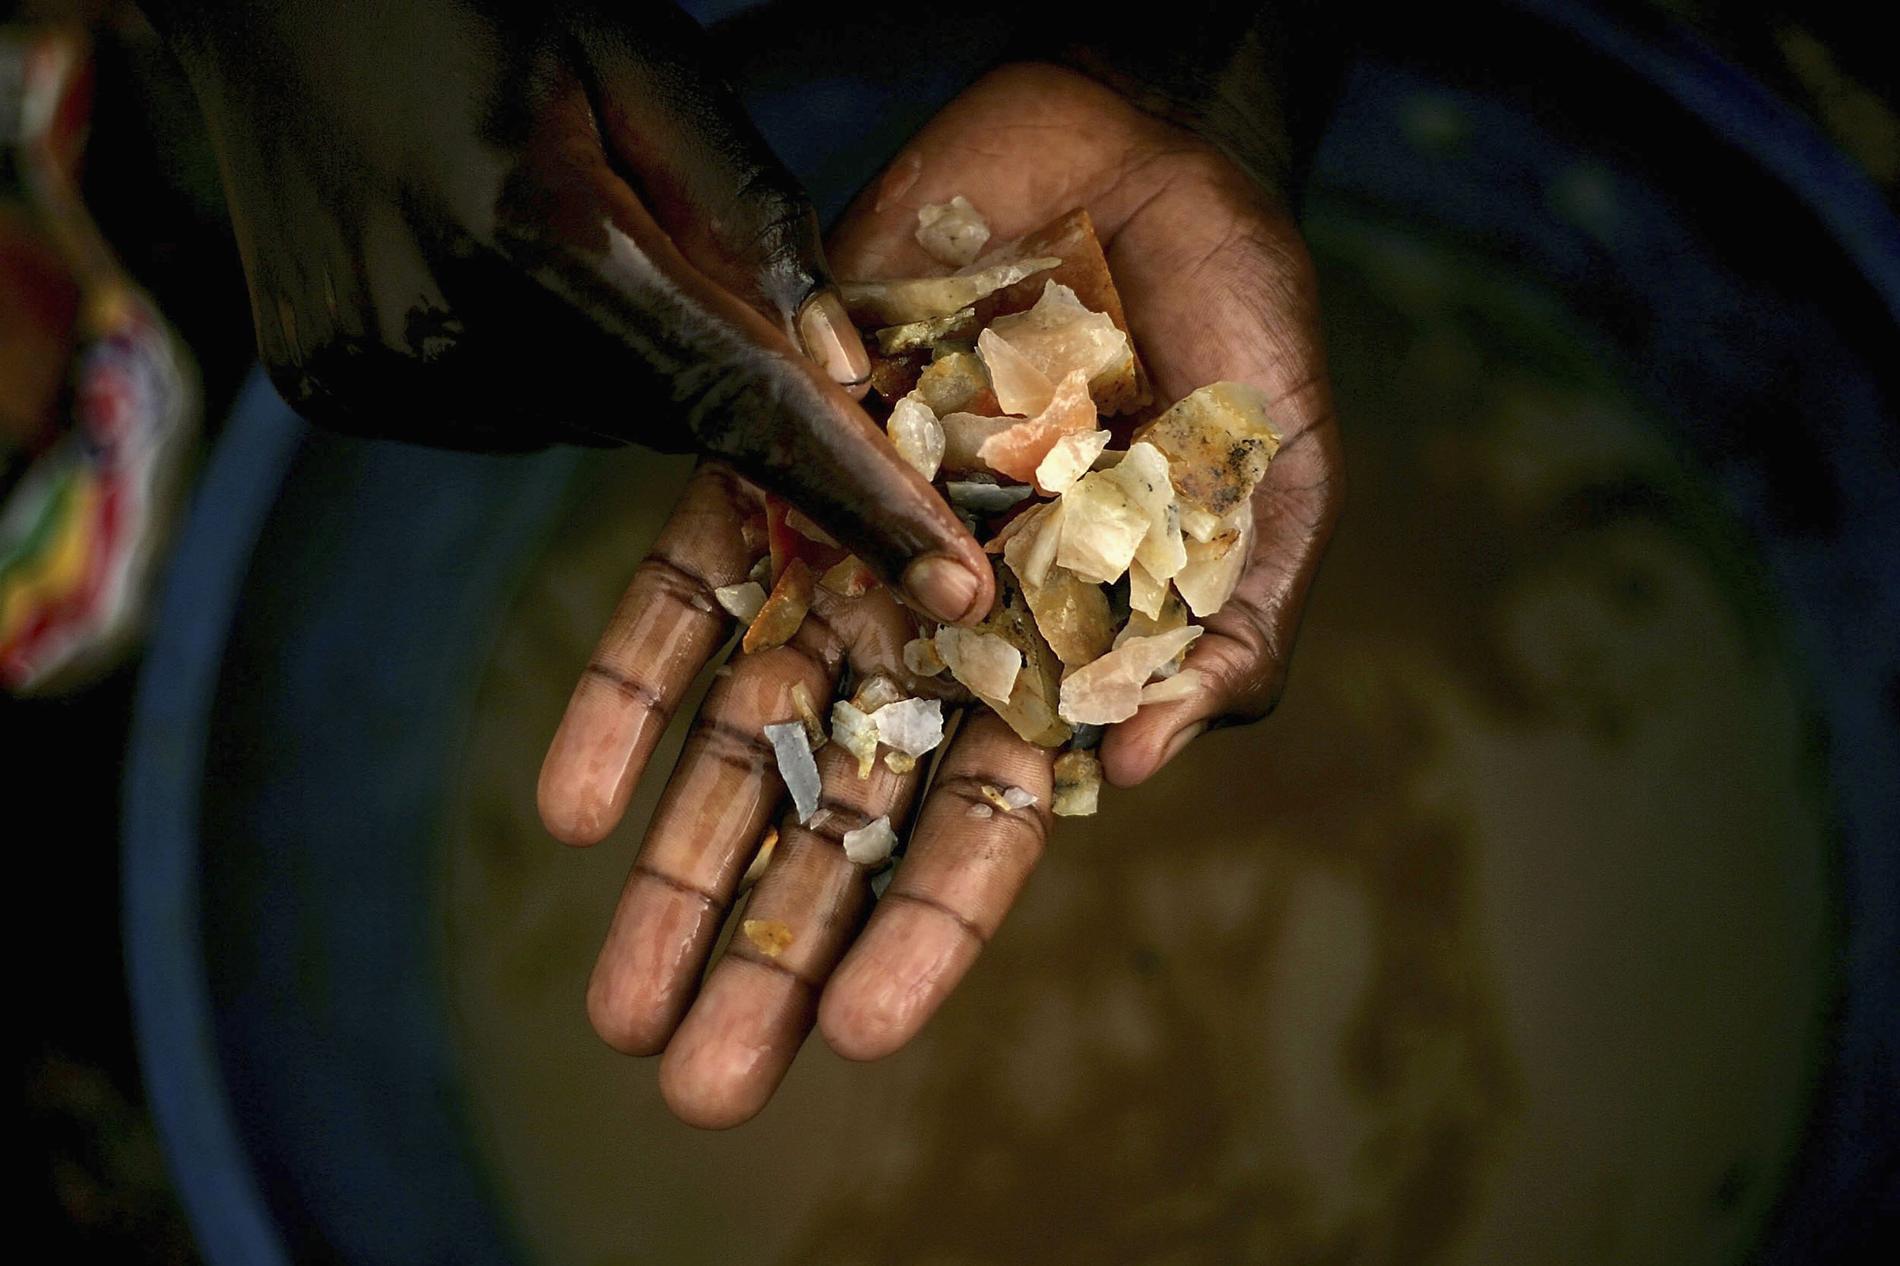 ARKIVBILD: En pojke letar efter guld i en gruva i Mongbwalu, Kongo-Kinshasa